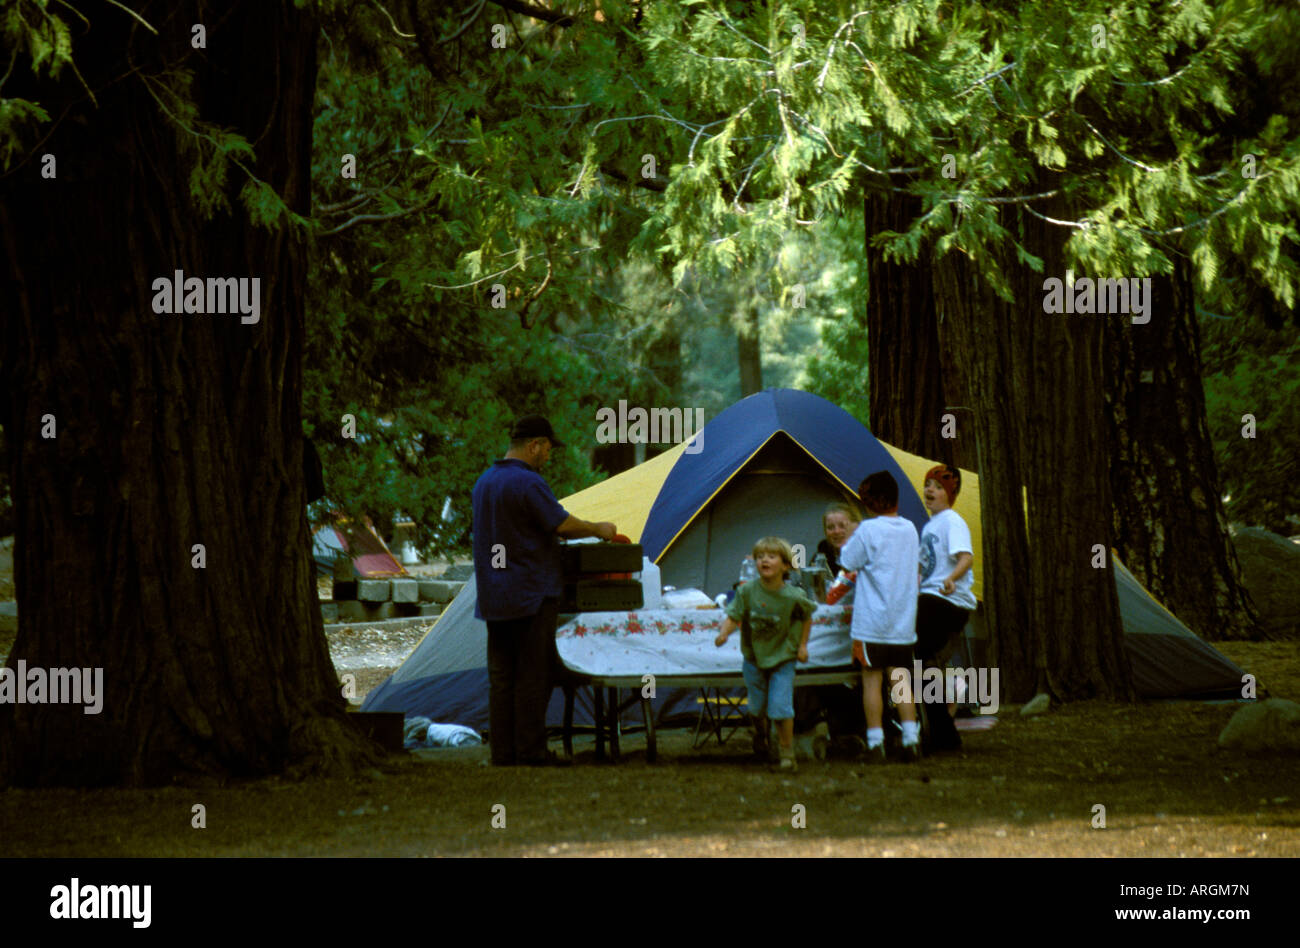 Eine Familie hat ein Zelt aufgeschlagen und bereitet ein Picknick auf einem Campingplatz im Yosemite-Nationalpark in Kalifornien. Stockfoto